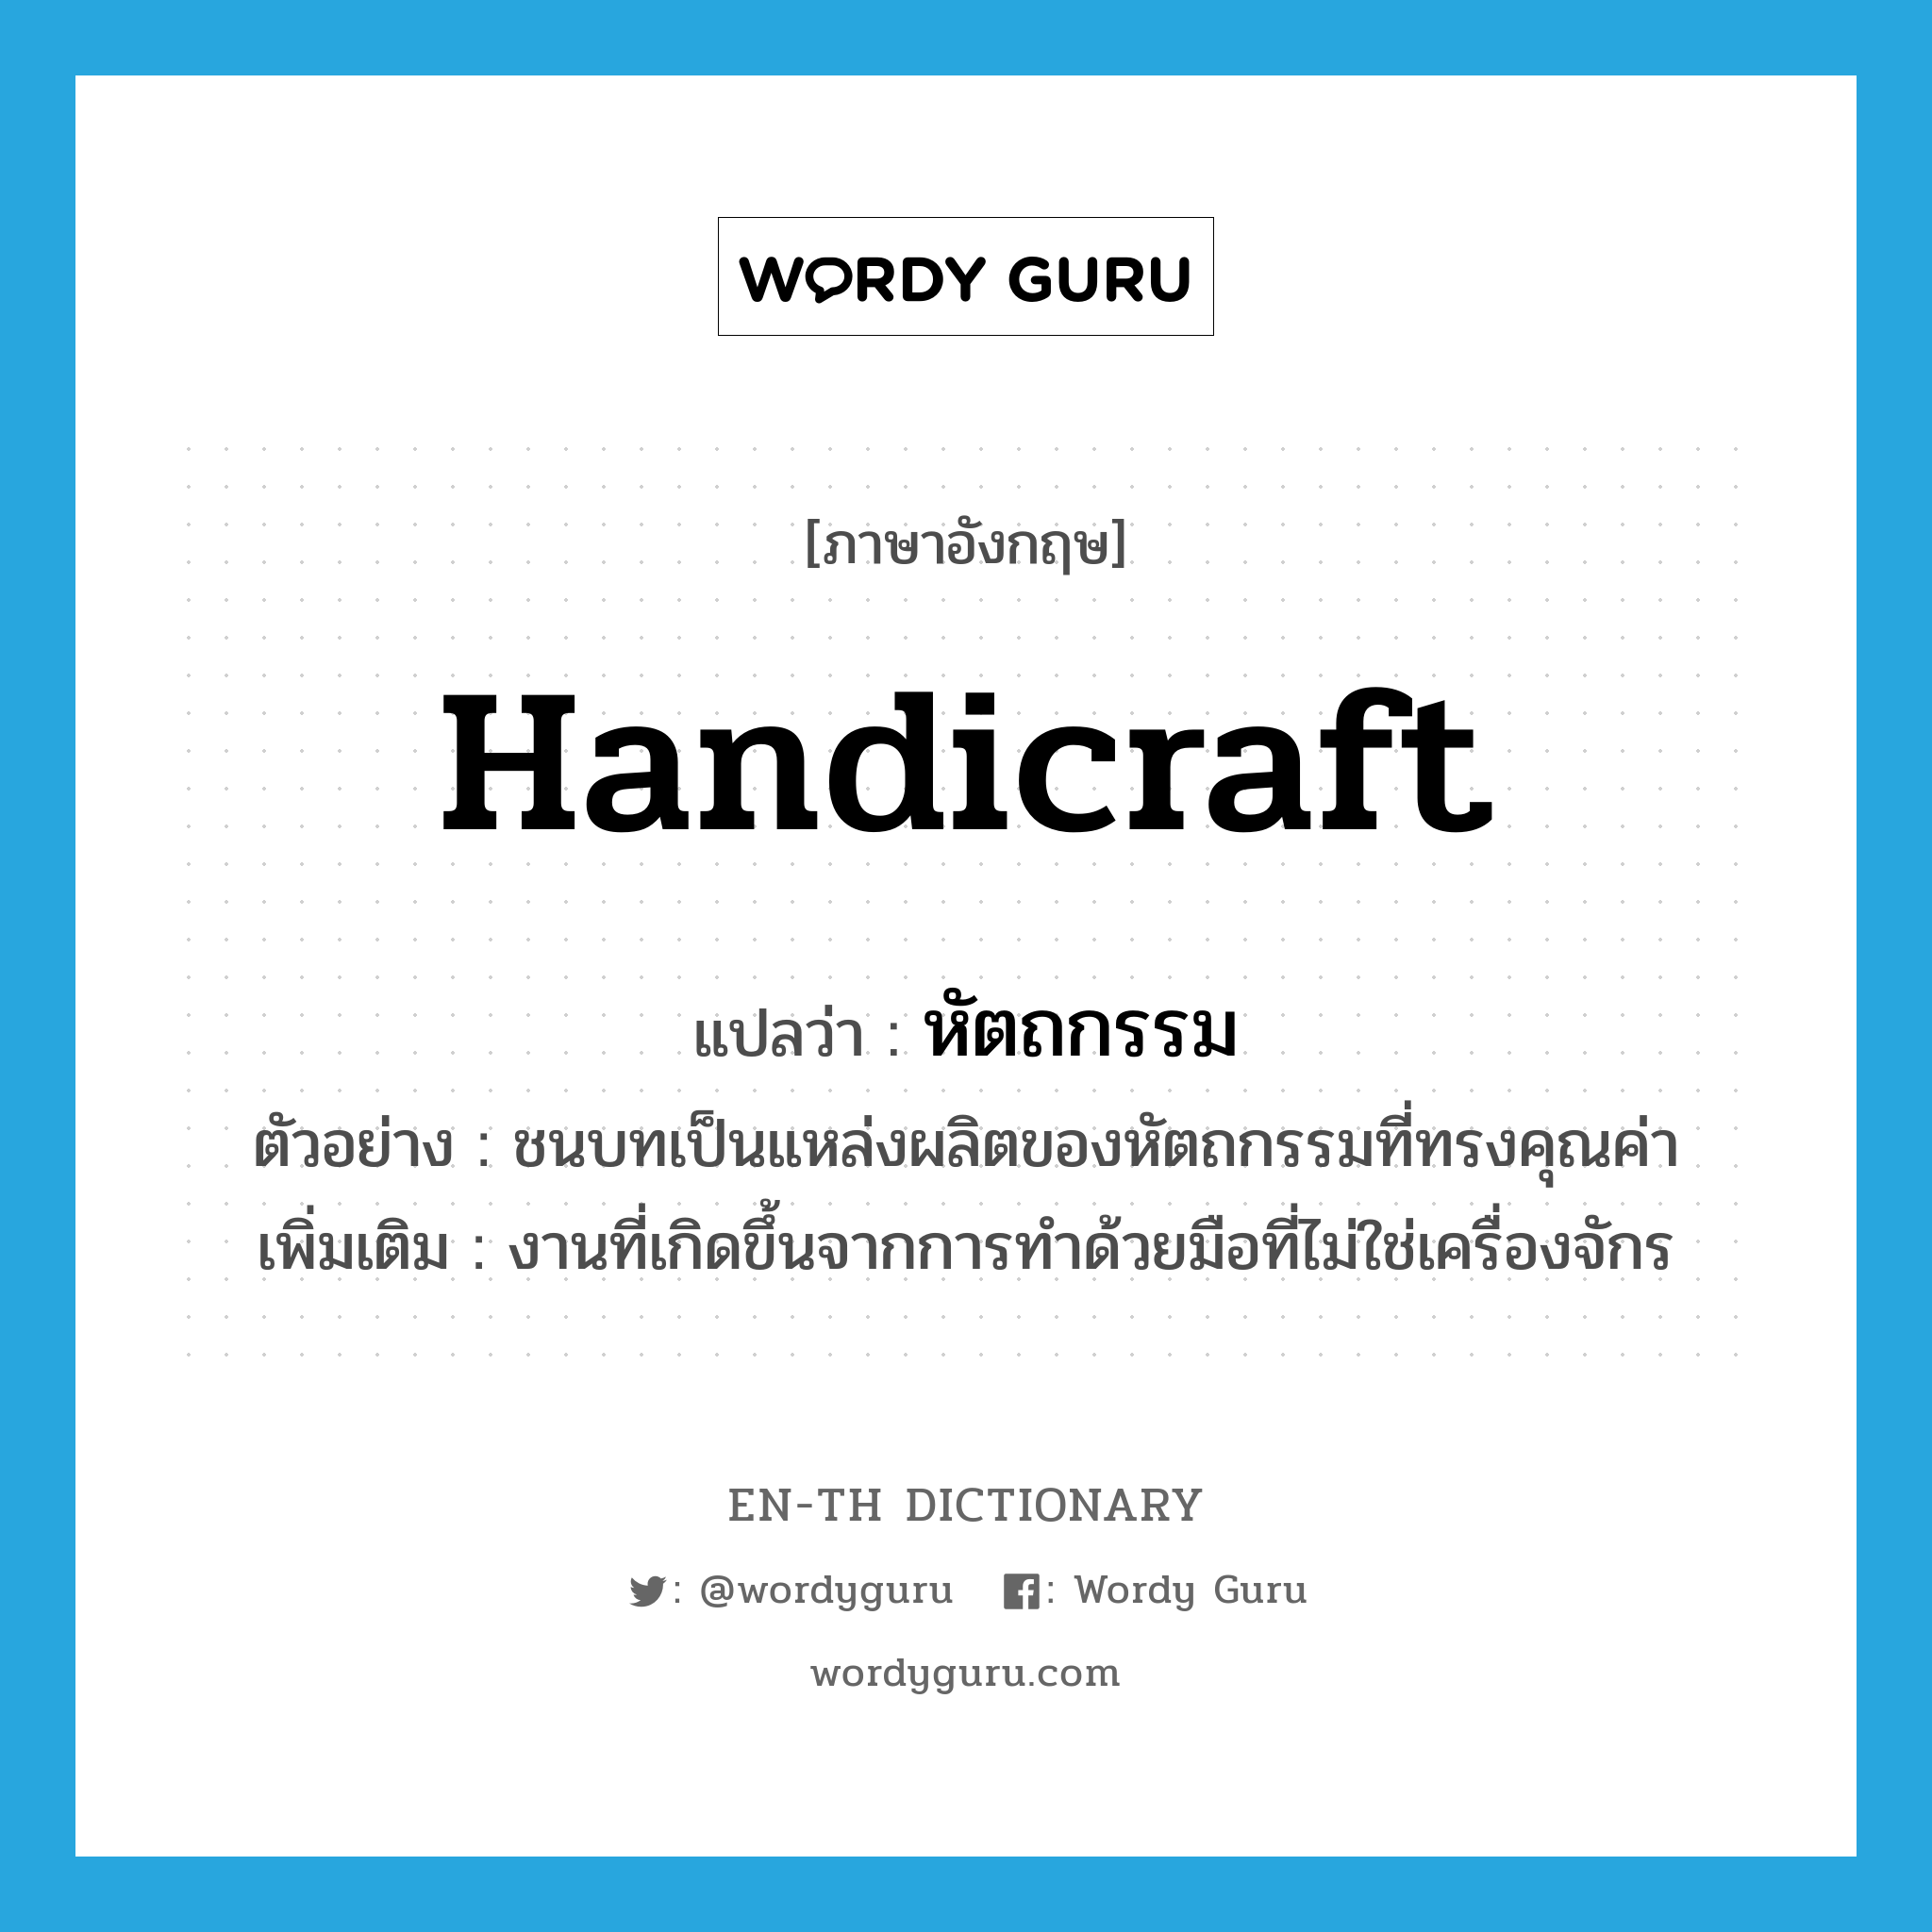 handicraft แปลว่า?, คำศัพท์ภาษาอังกฤษ handicraft แปลว่า หัตถกรรม ประเภท N ตัวอย่าง ชนบทเป็นแหล่งผลิตของหัตถกรรมที่ทรงคุณค่า เพิ่มเติม งานที่เกิดขึ้นจากการทำด้วยมือที่ไม่ใช่เครื่องจักร หมวด N